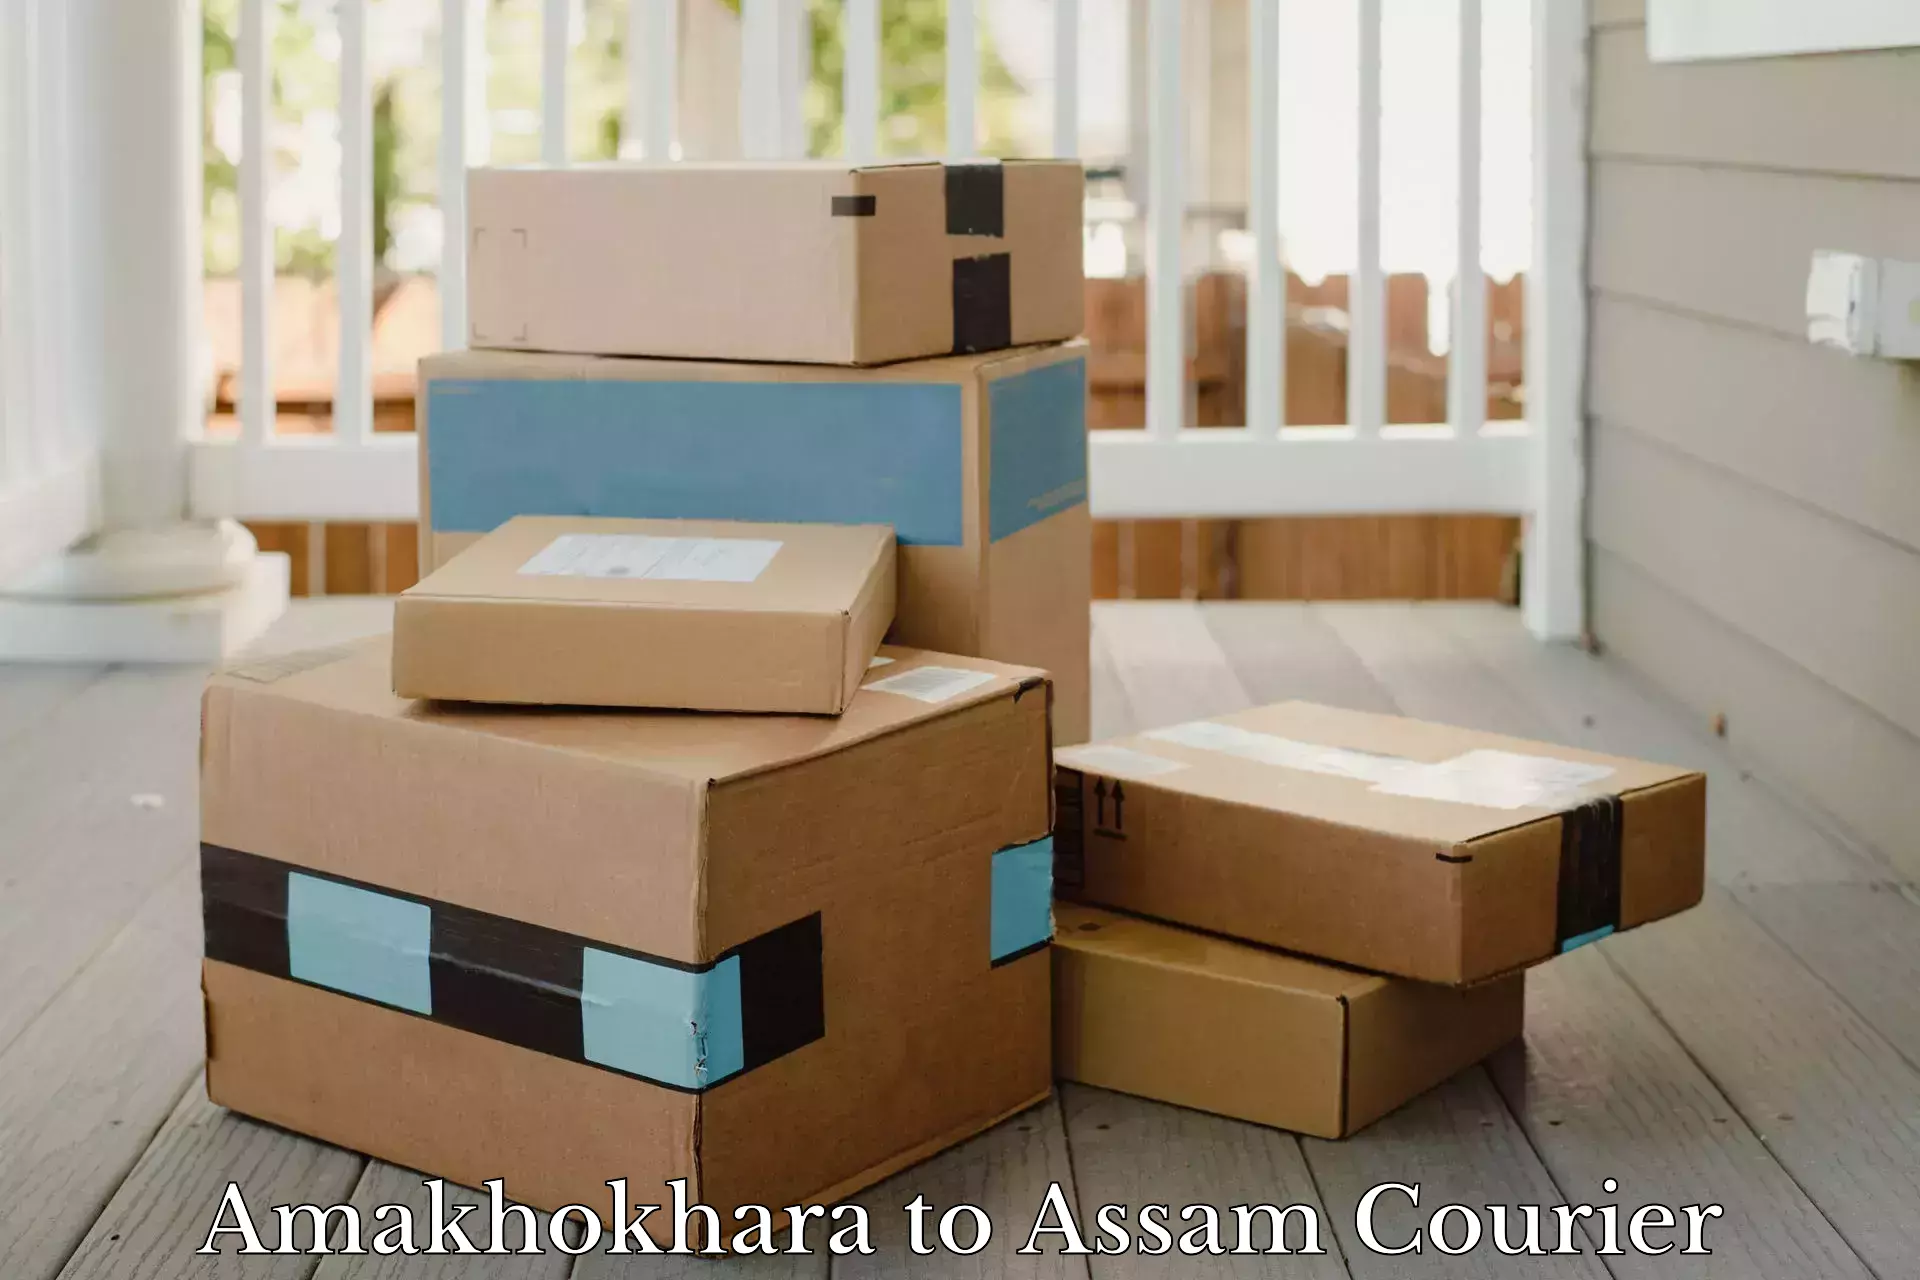 Package tracking Amakhokhara to Balapara